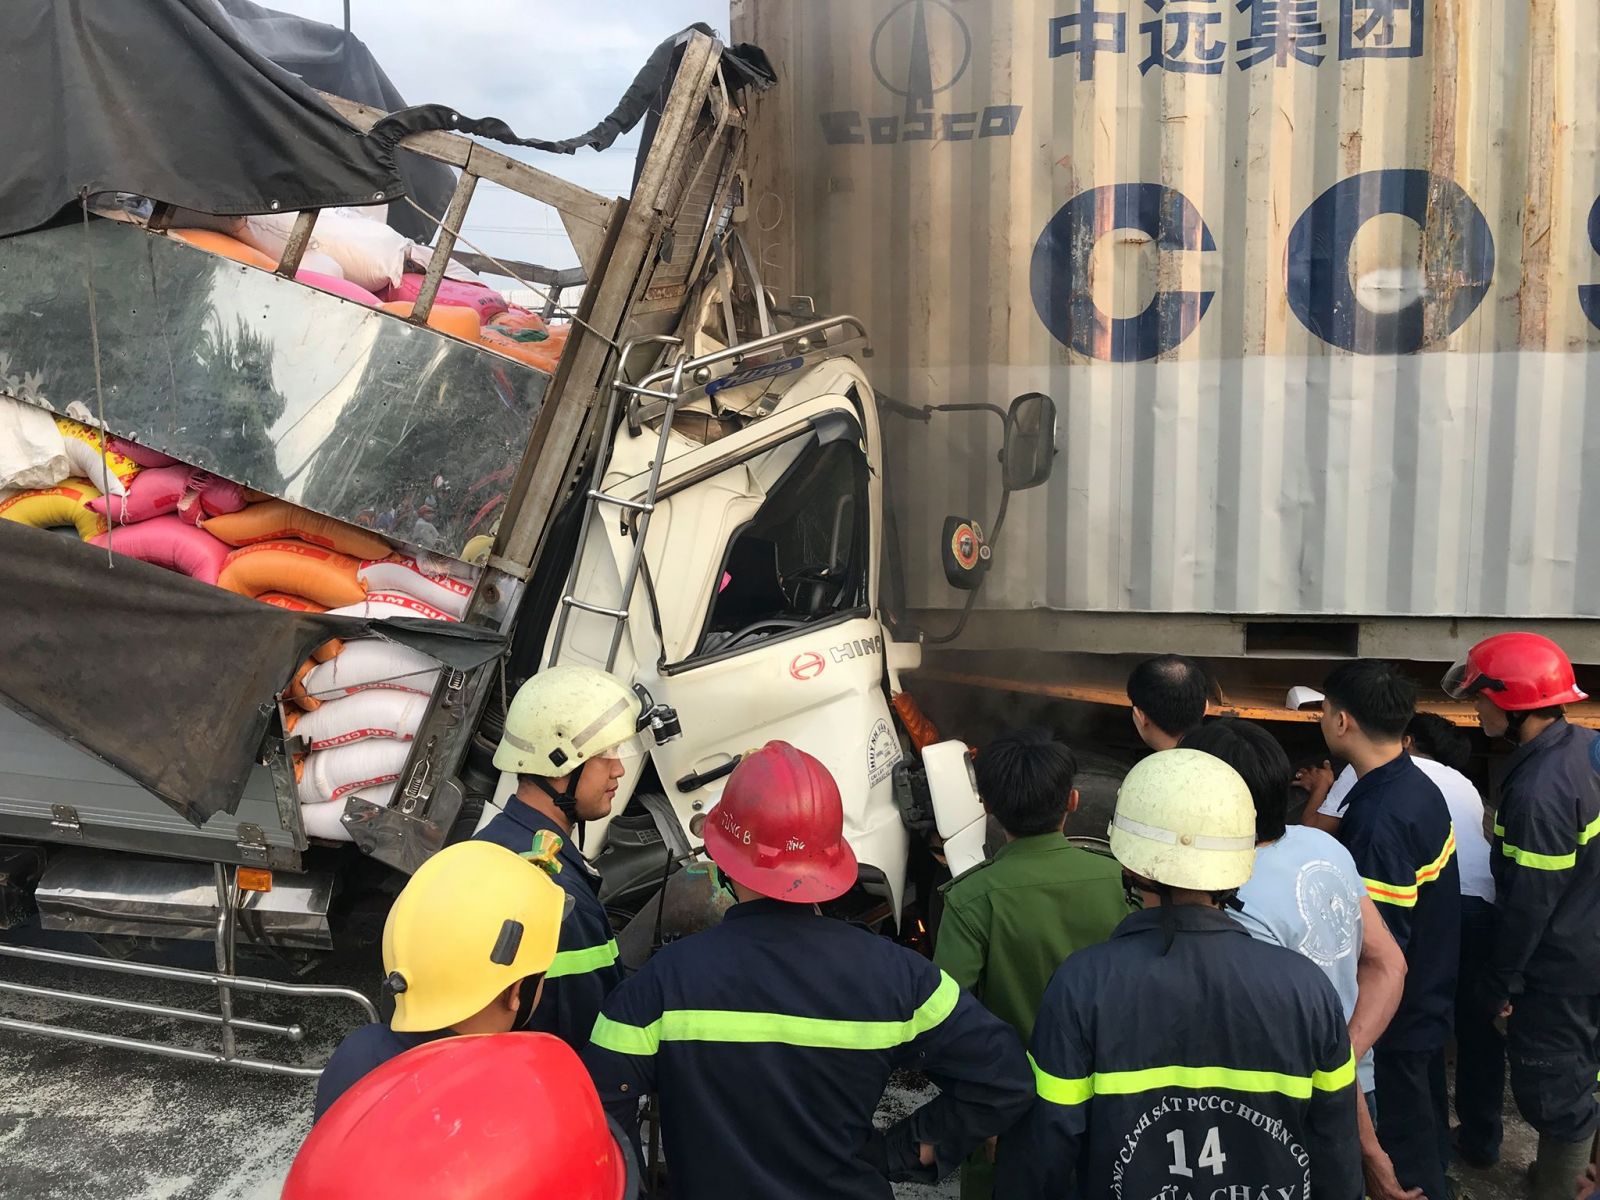 TP HCM: Xe tải húc đuôi container, 3 người tử vong, 1 người bị thương